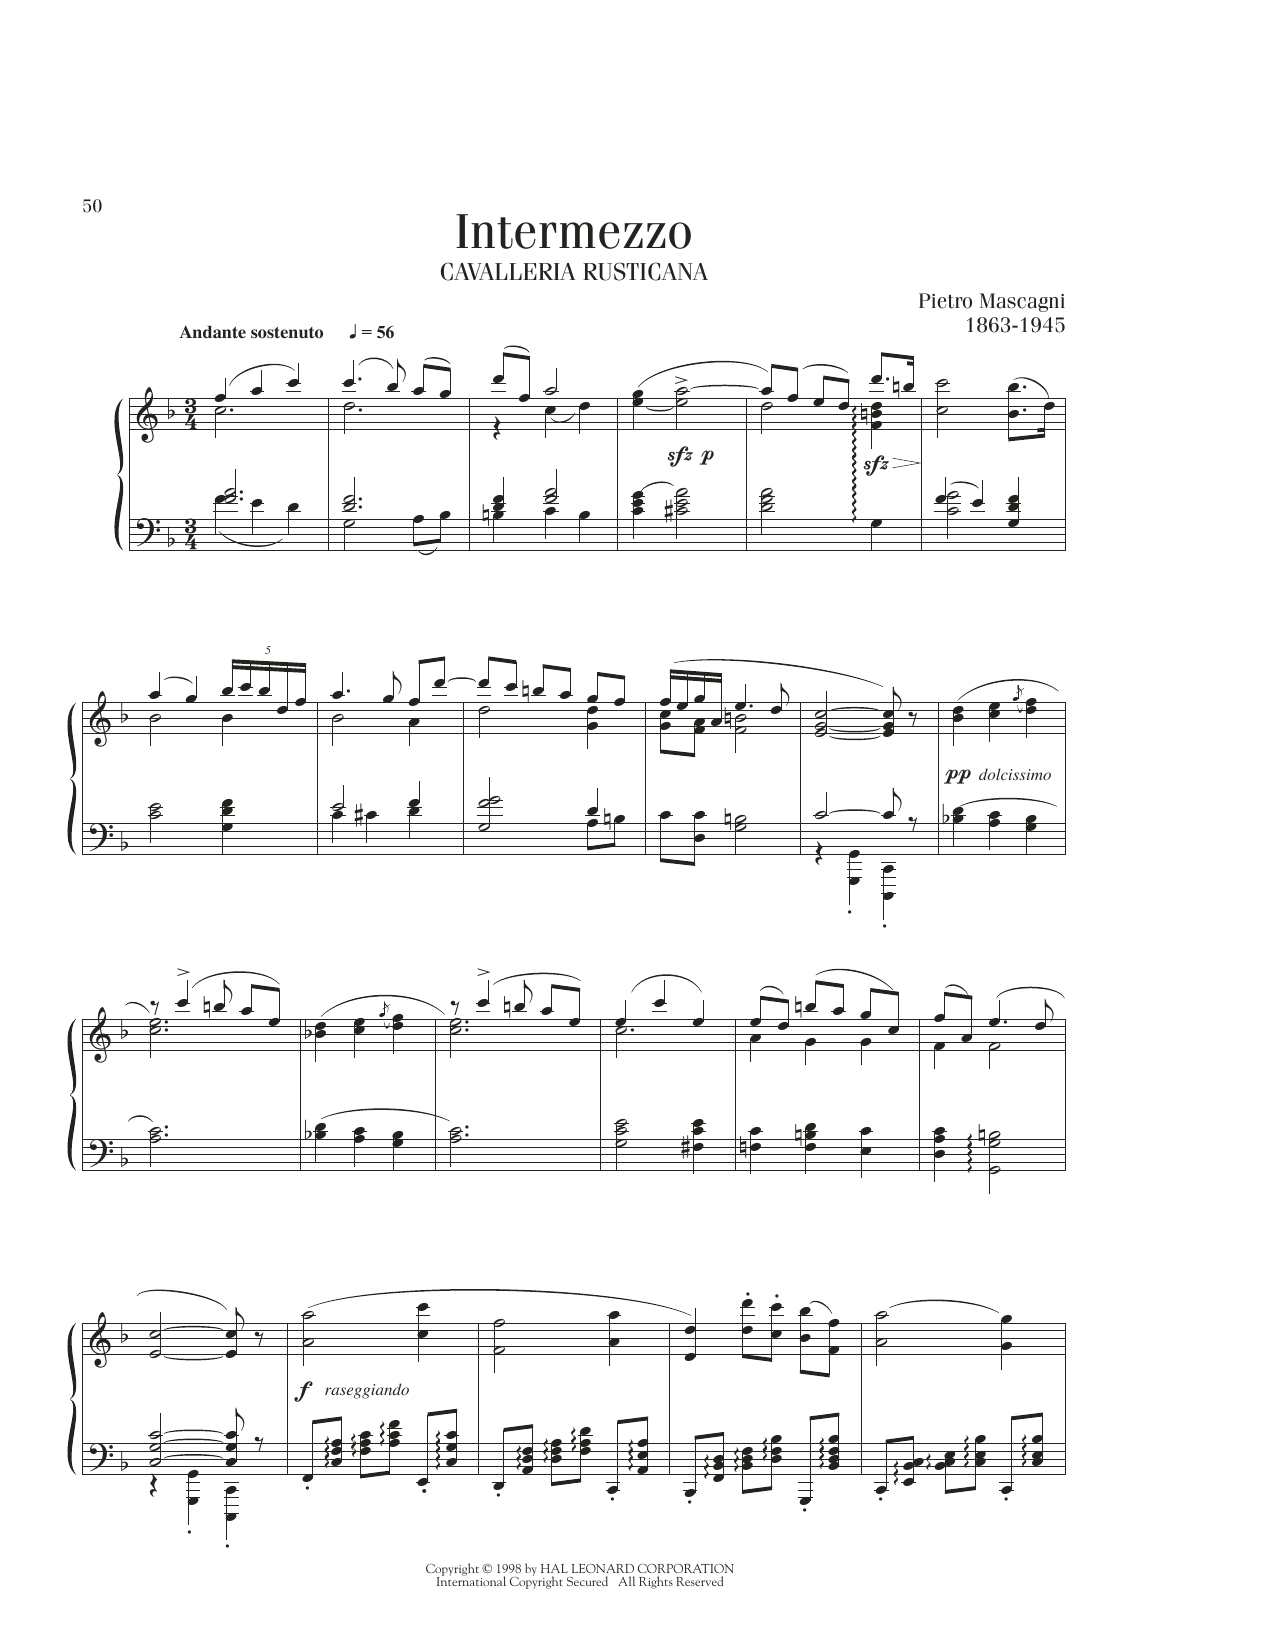 Pietro Mascagni Intermezzo sheet music notes printable PDF score